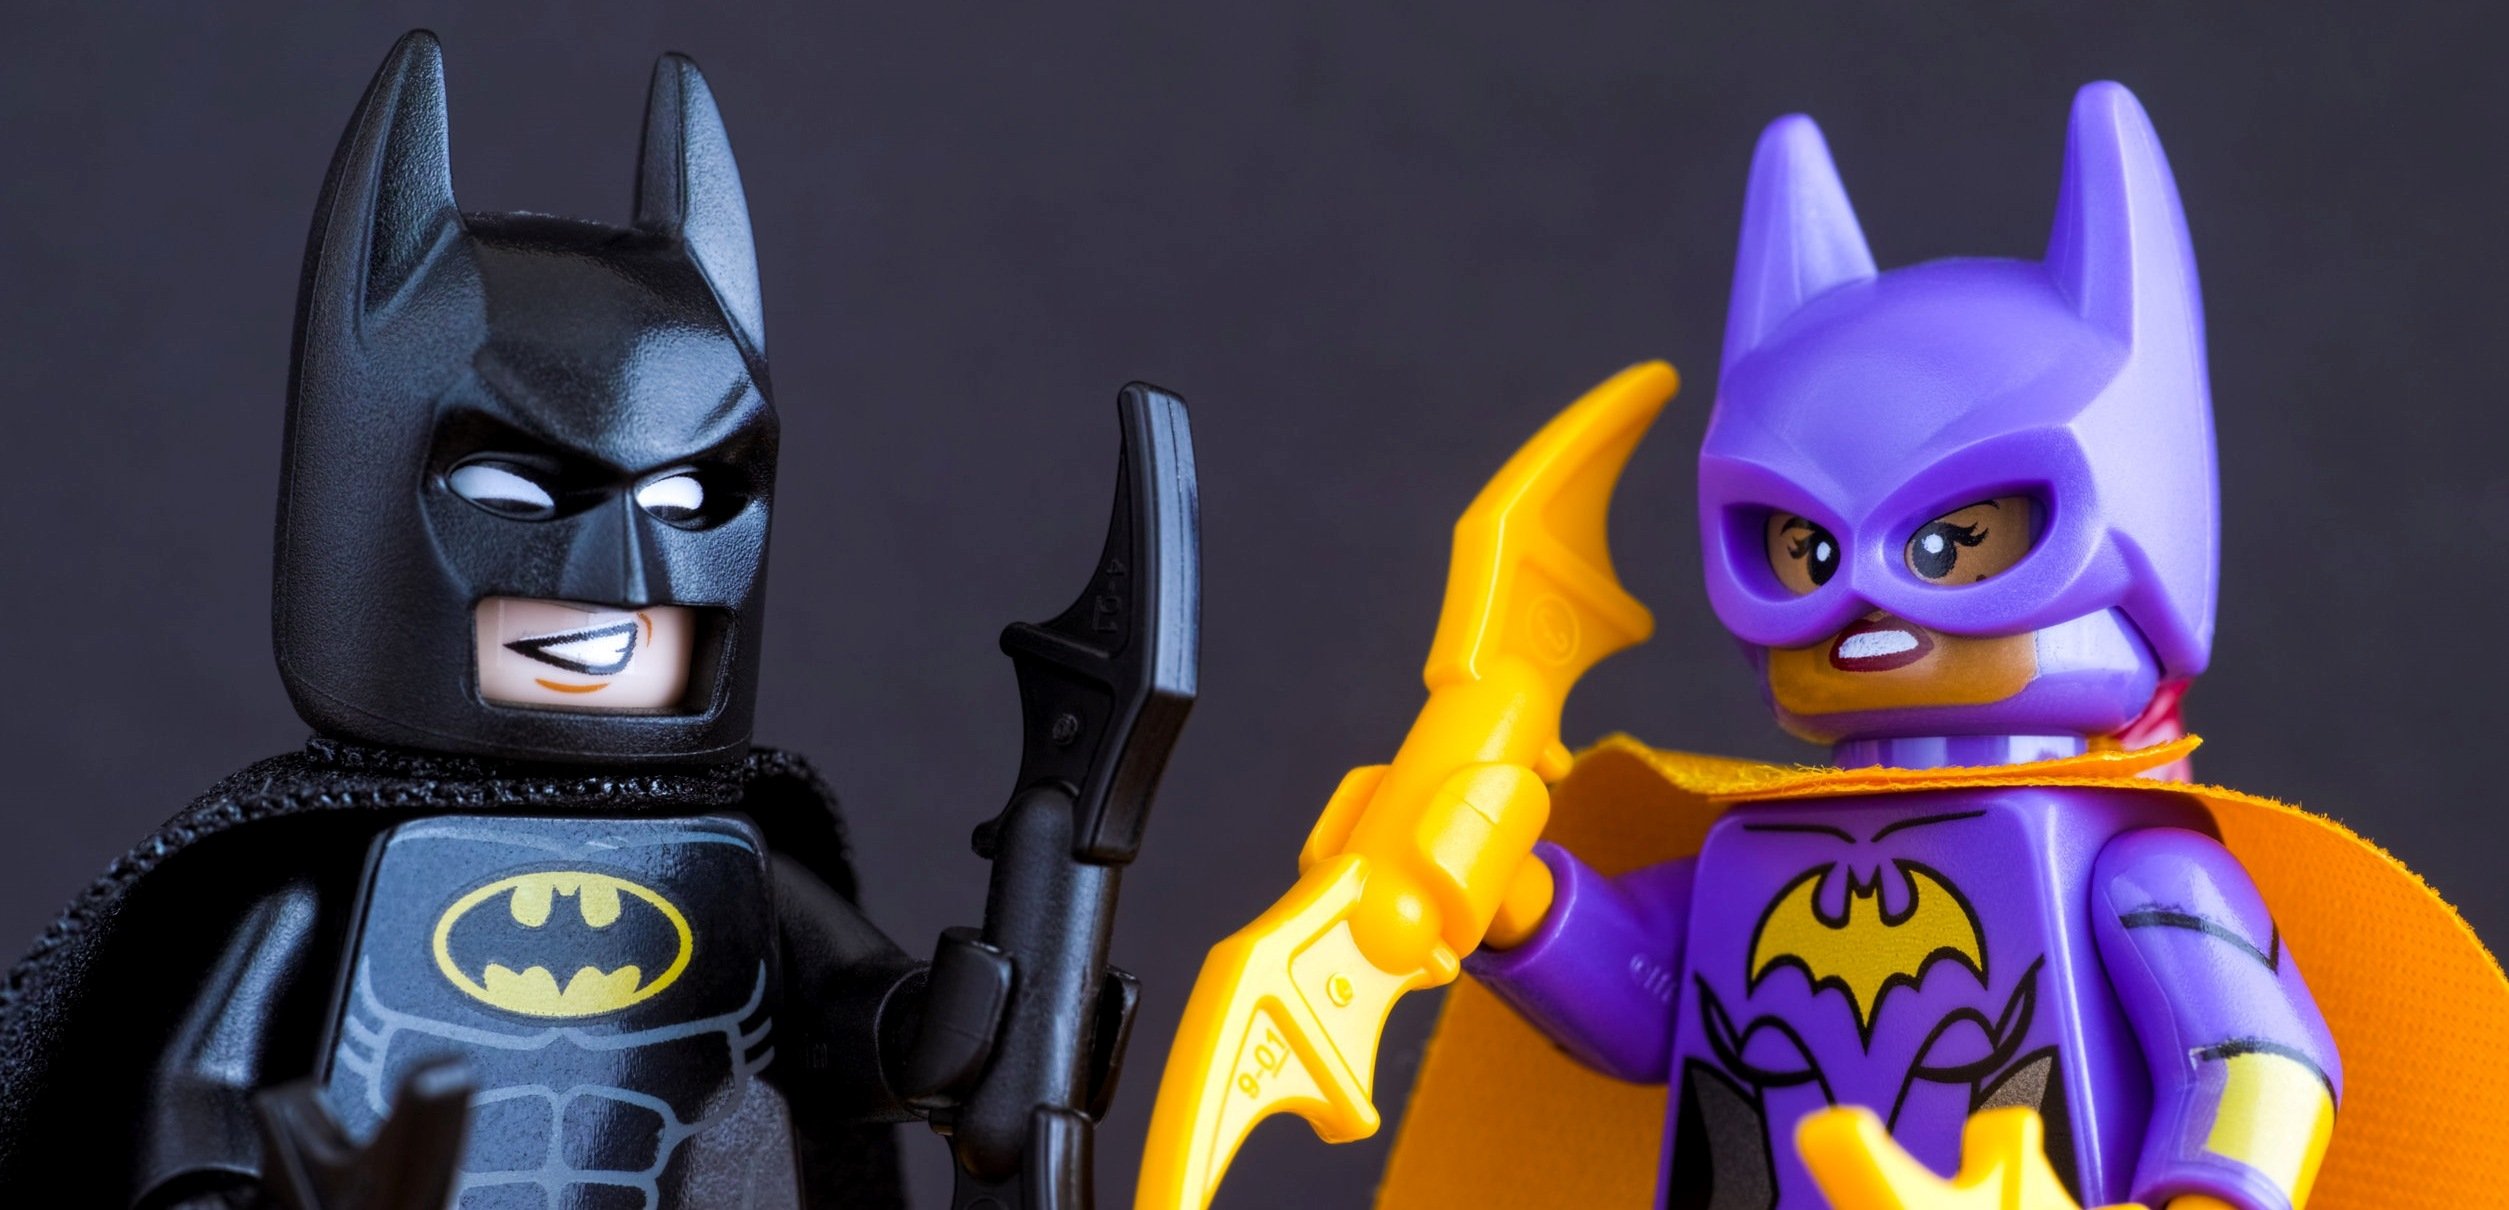 LEGO Batman and Batgirl